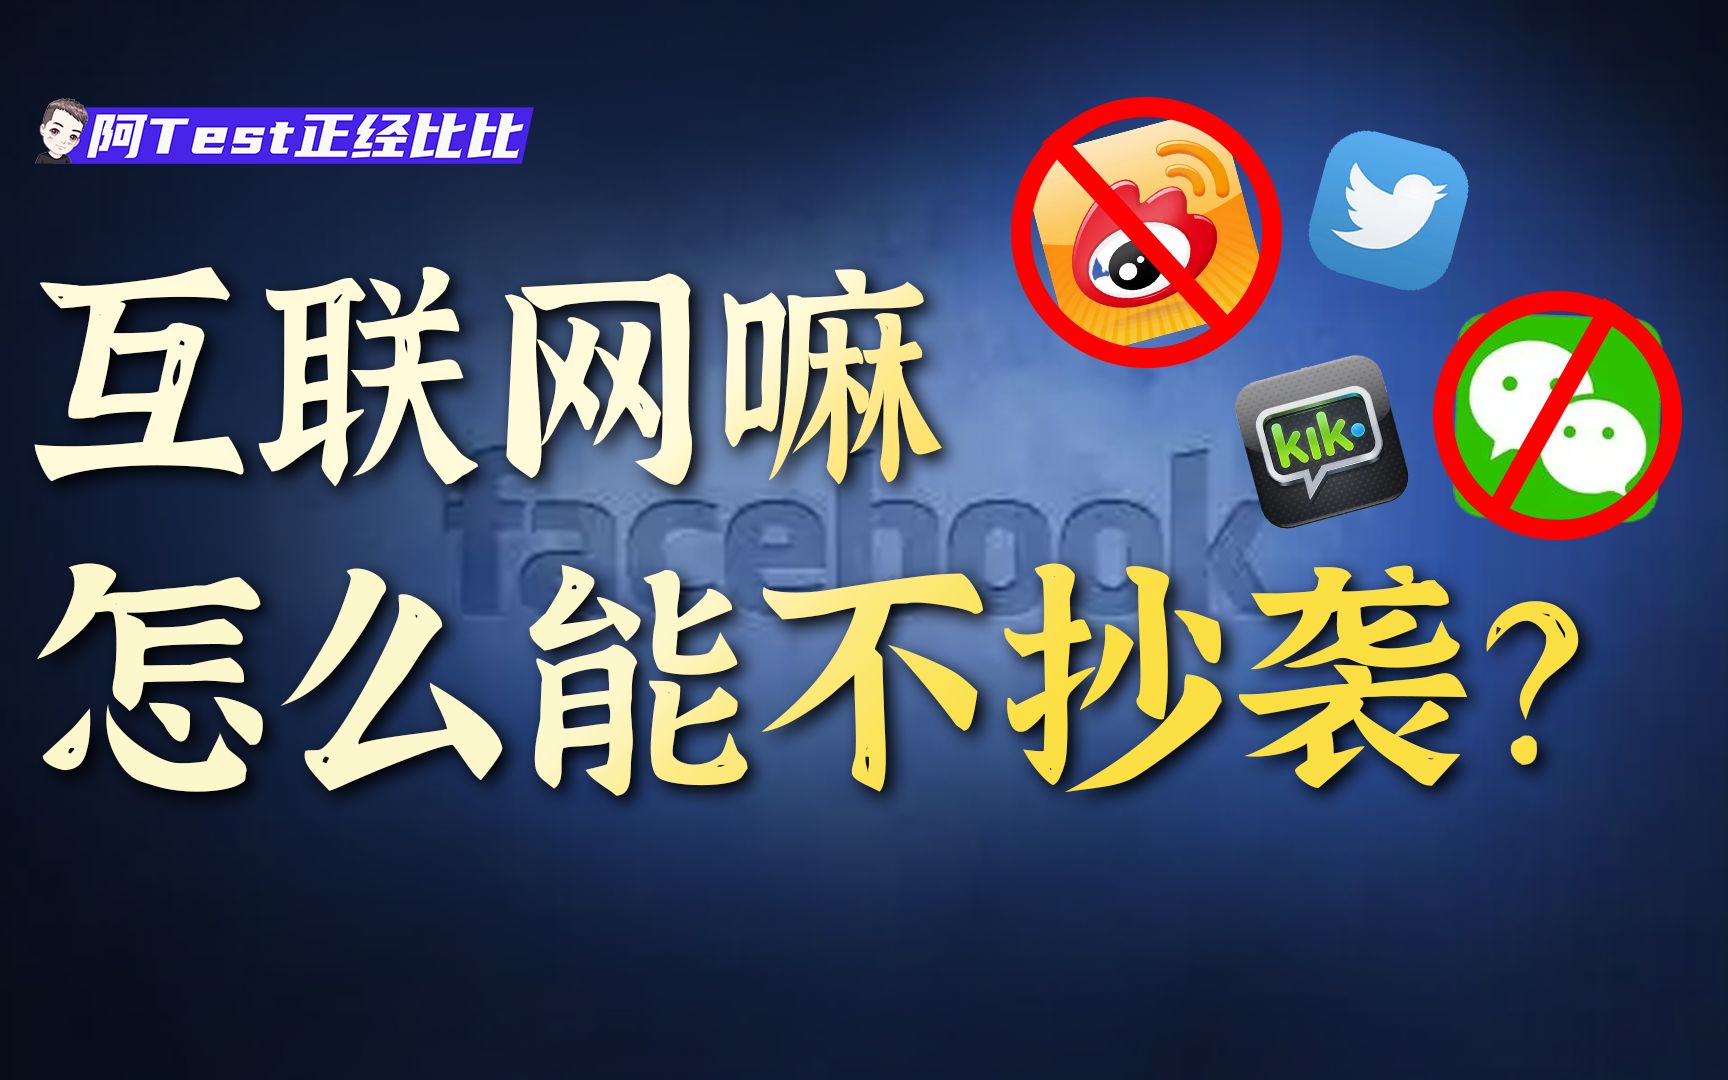 微博抄Twitter，微信抄Kik，为什么中国却没有Facebook？【阿Test】